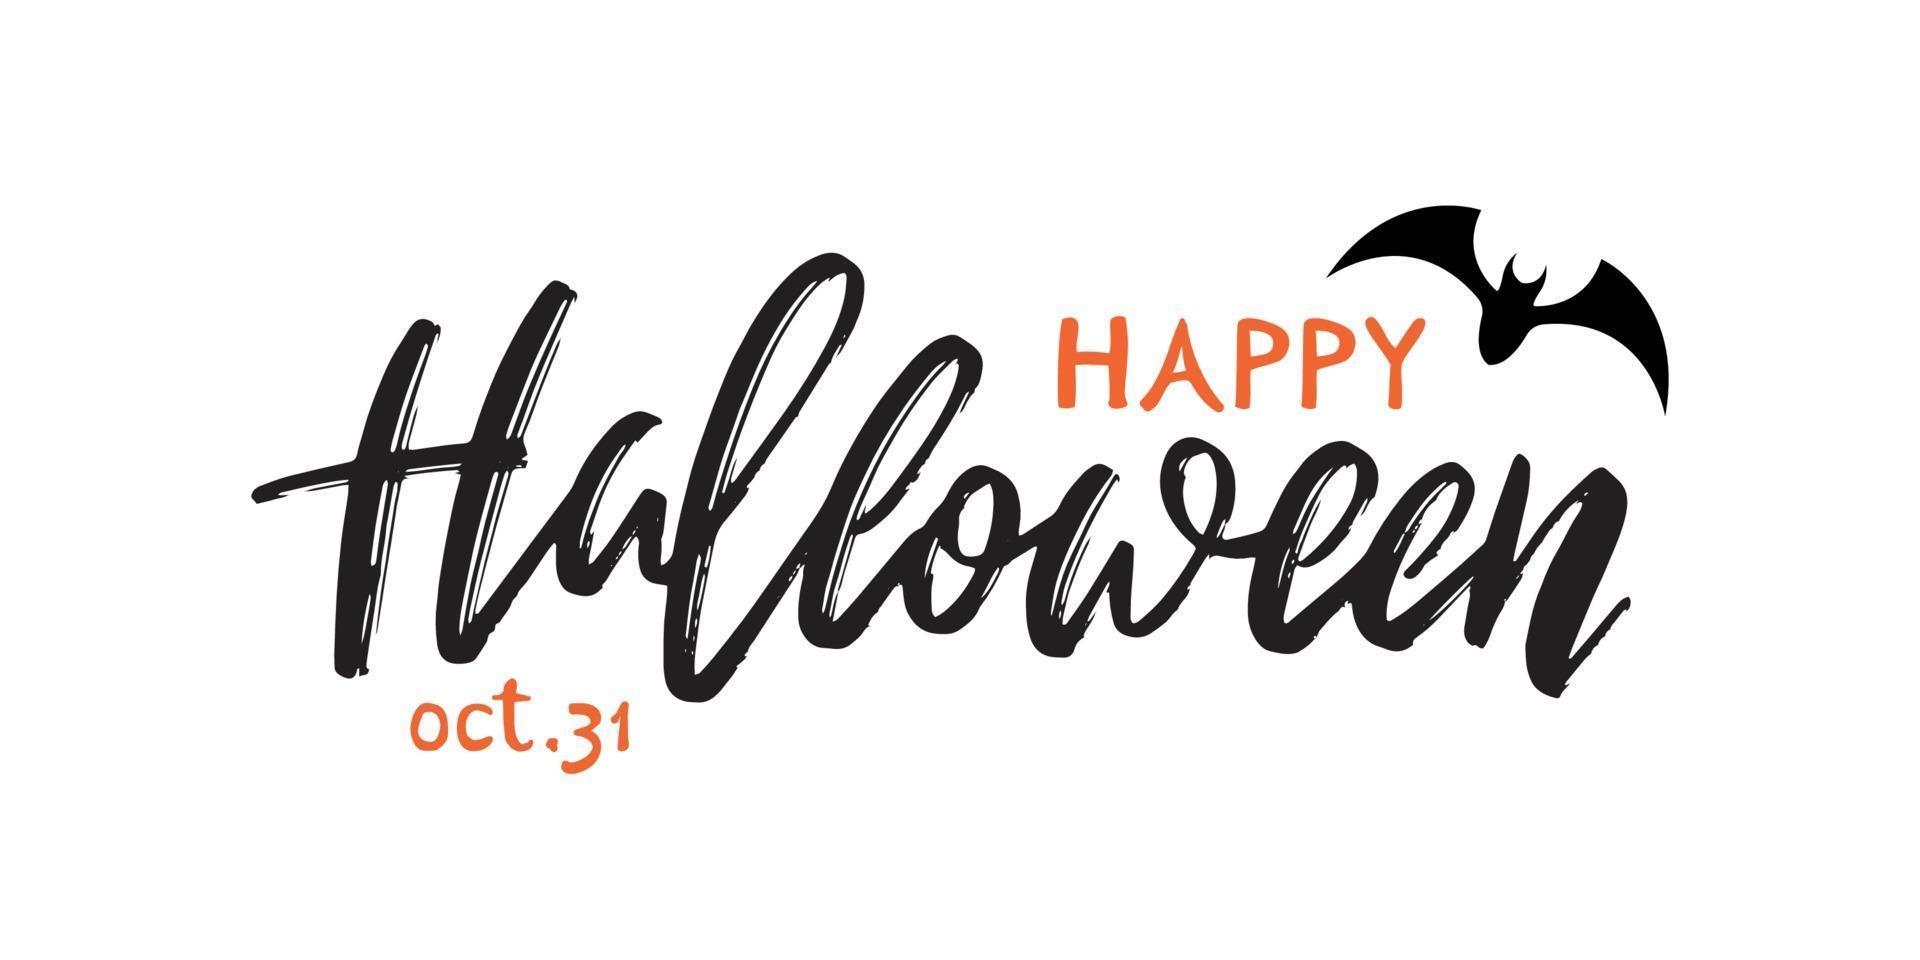 iscrizione scritta a mano felice halloween. banner di saluto di vettore per la celebrazione di Halloween.